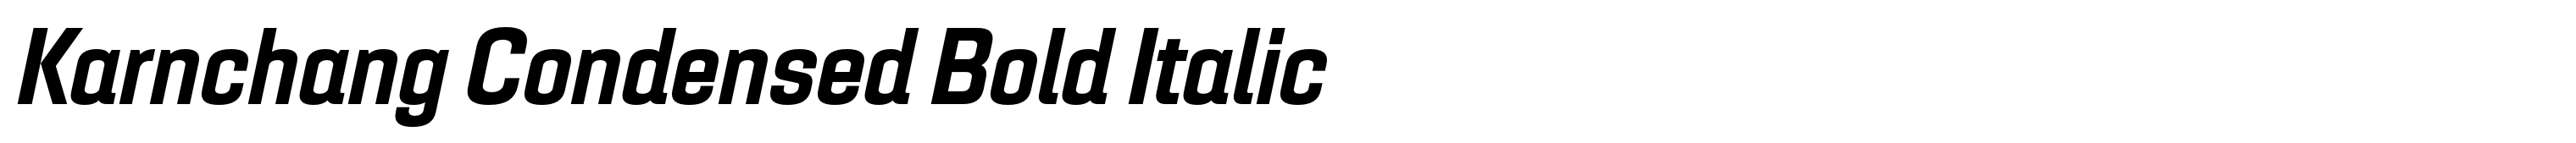 Karnchang Condensed Bold Italic